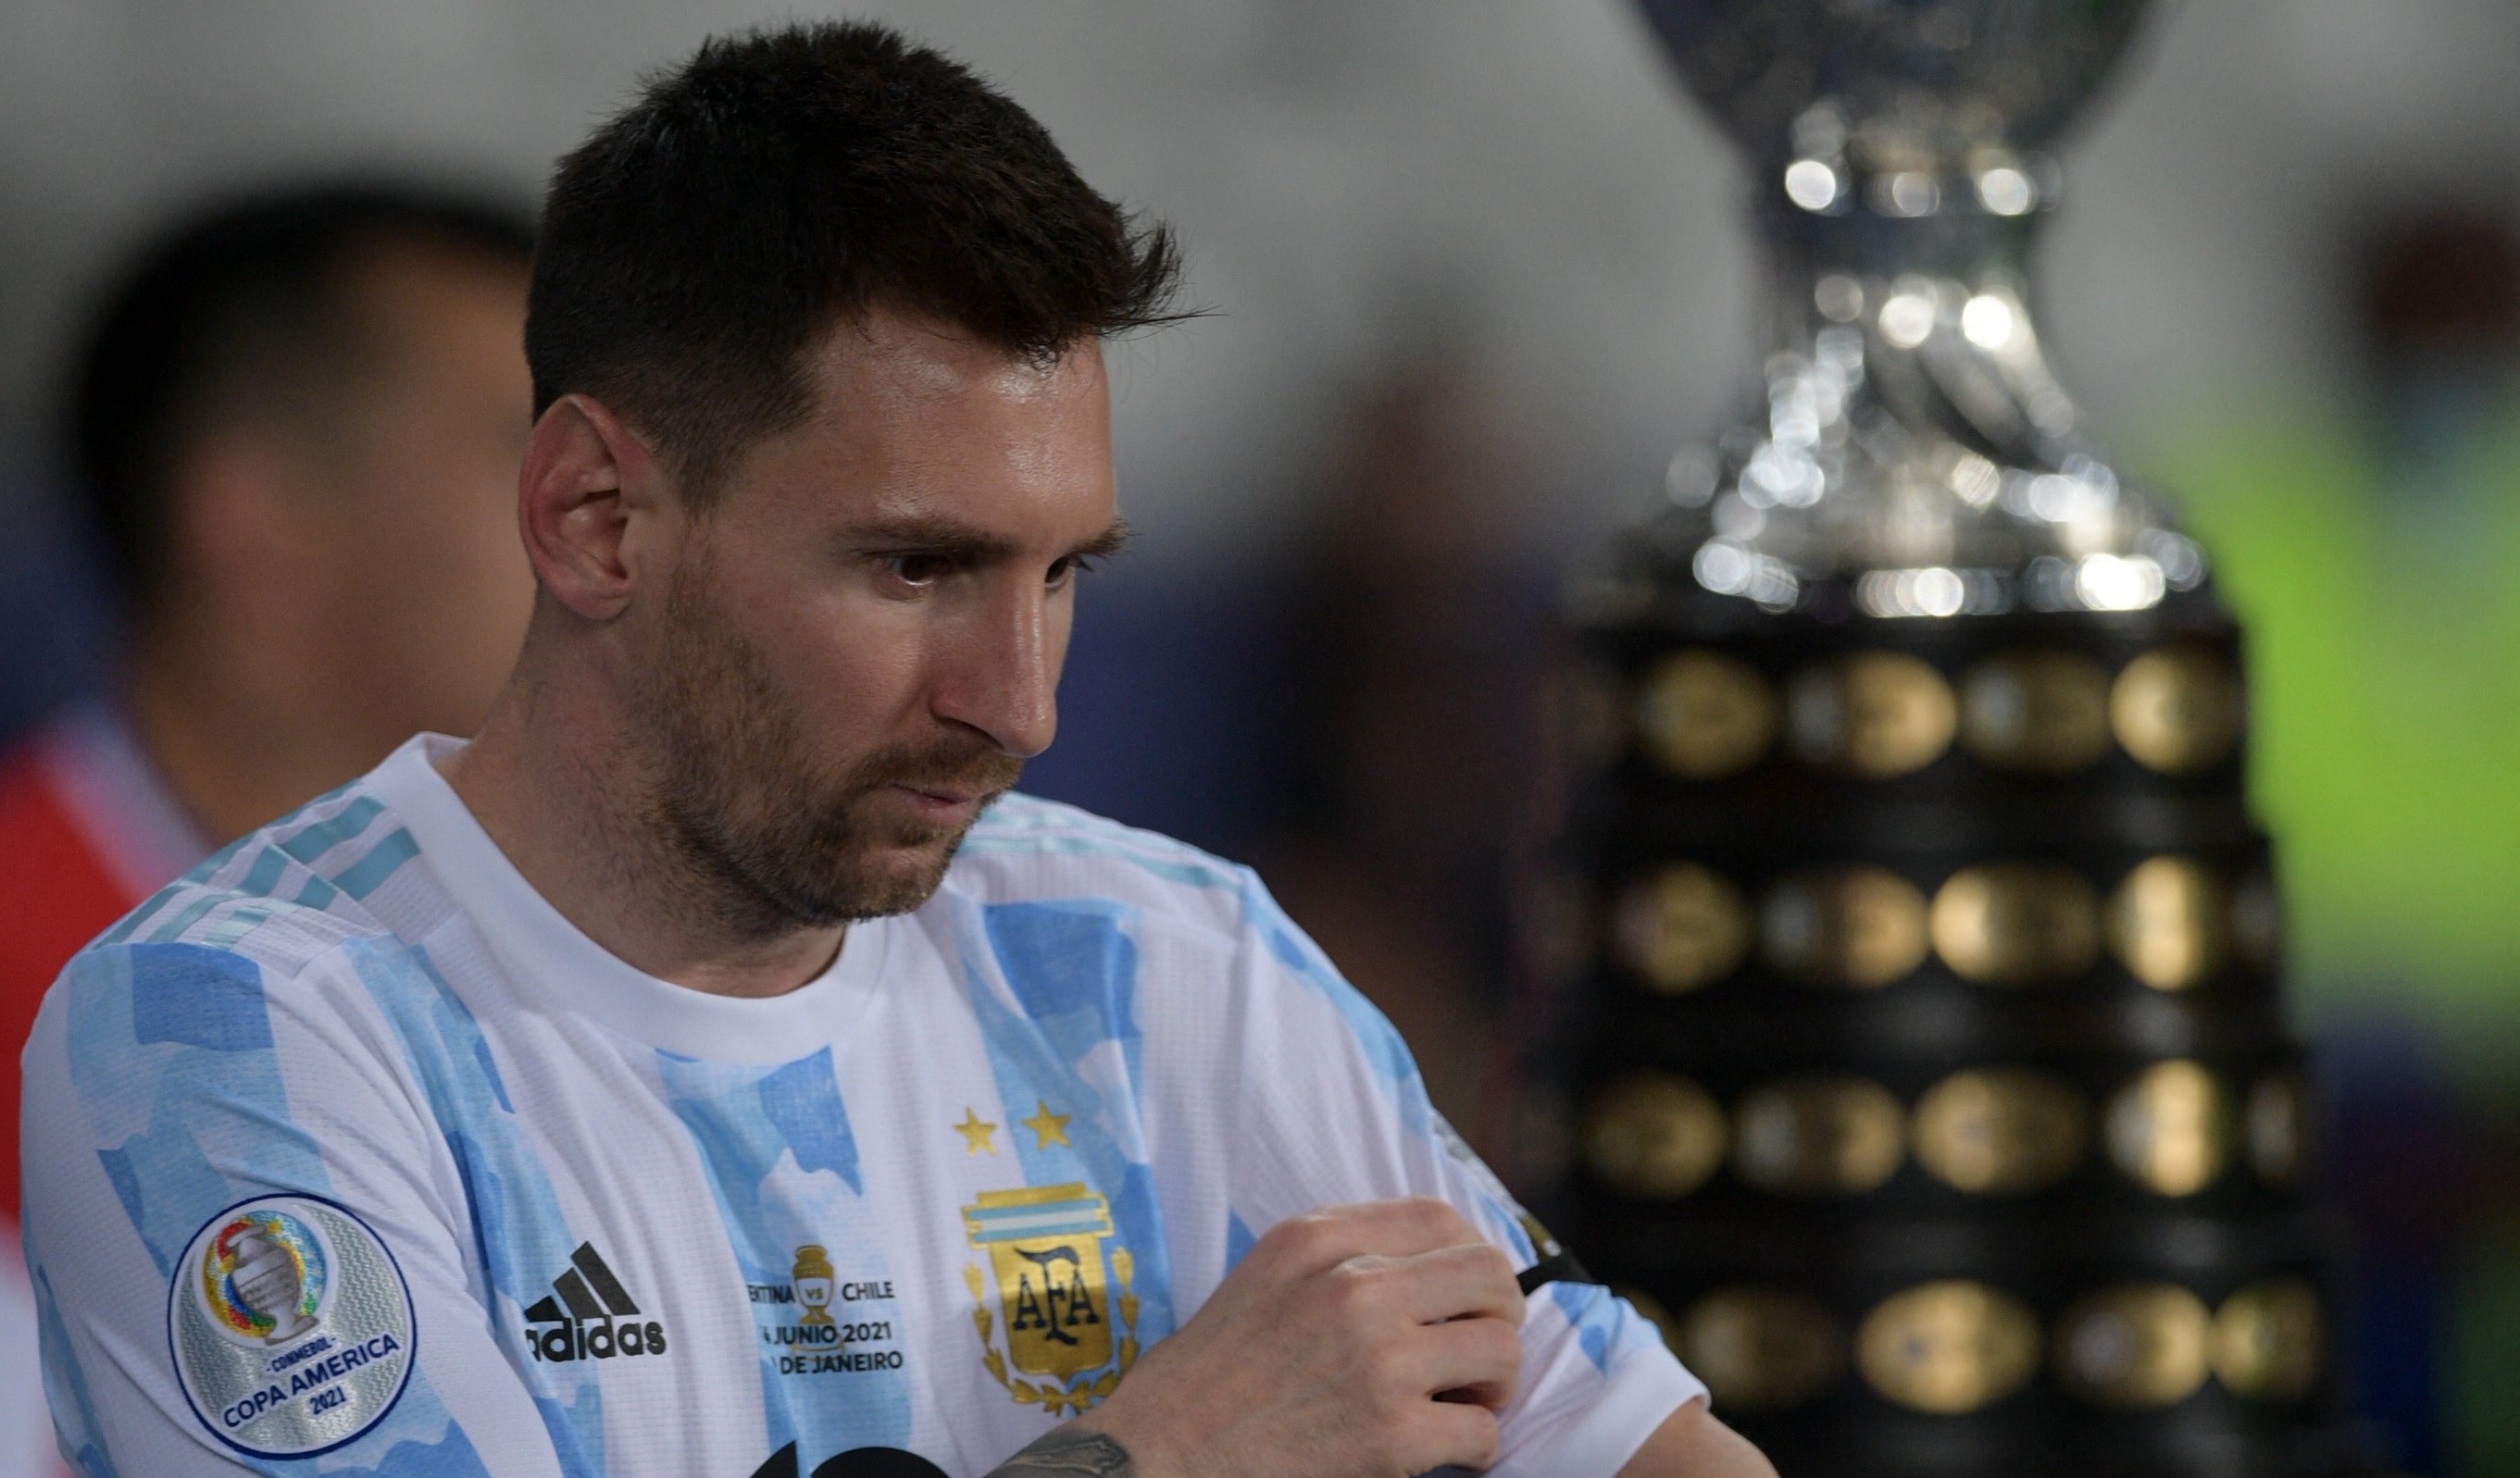 Argentina akan kembali mengandalkan Lionel Messi untuk membobol gawang Uruguay di matchday 2 Grup A Copa America 2021. (Foto: Twitter/@CopaAmerica)